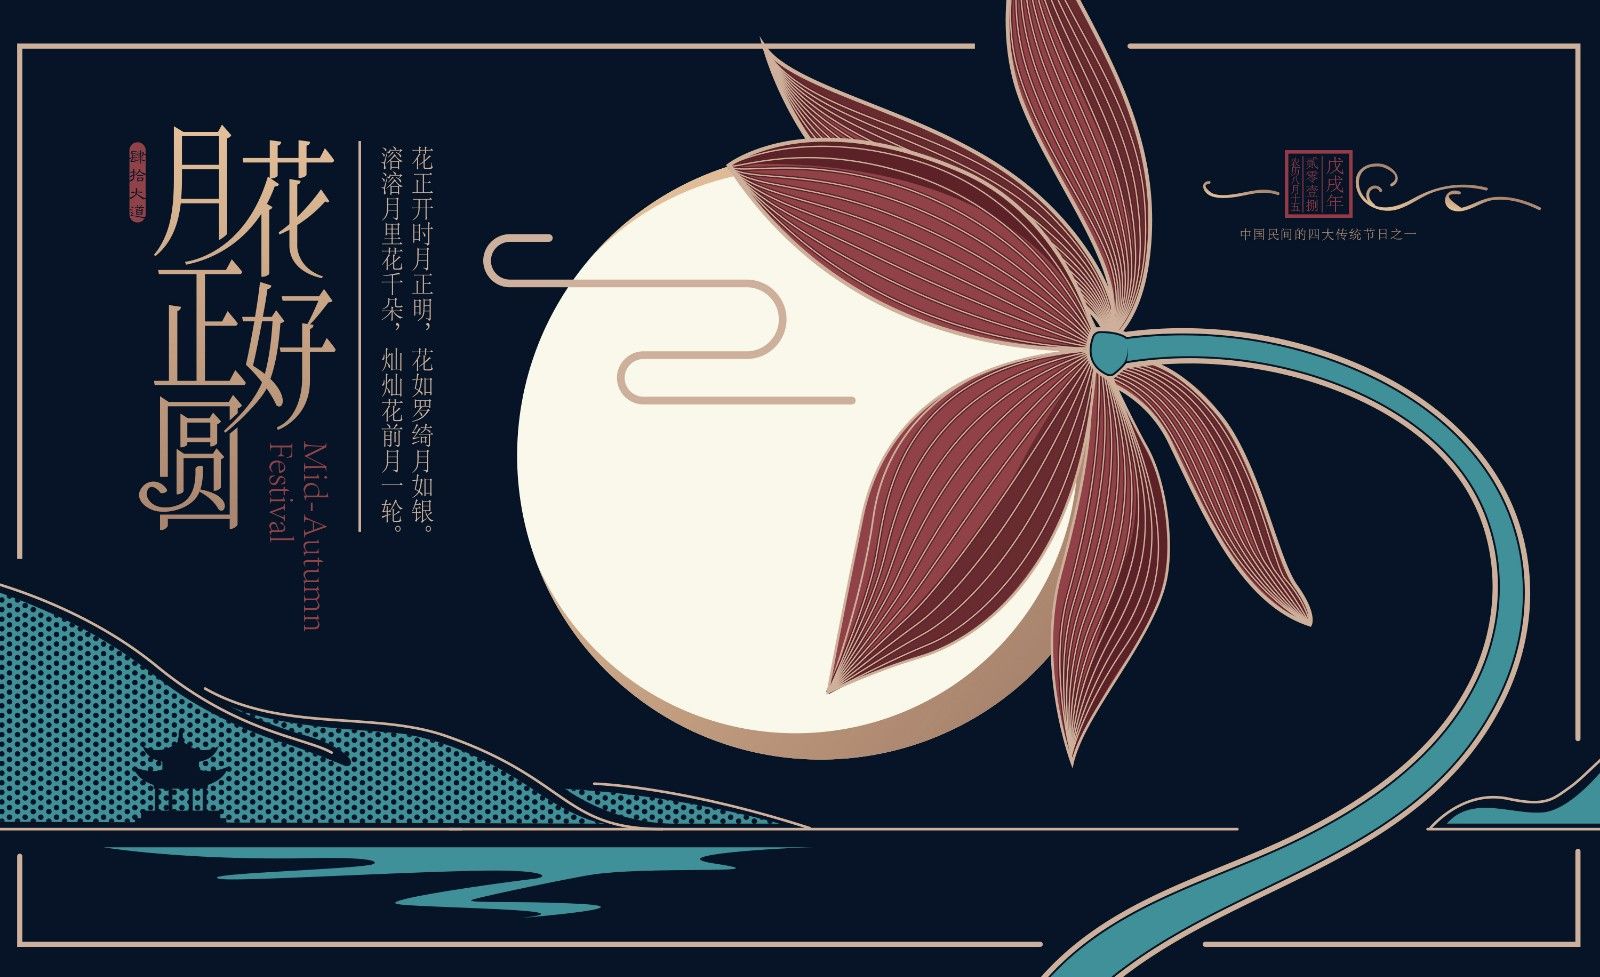 AI-中秋节（花好月圆）创意海报设计及创意思路